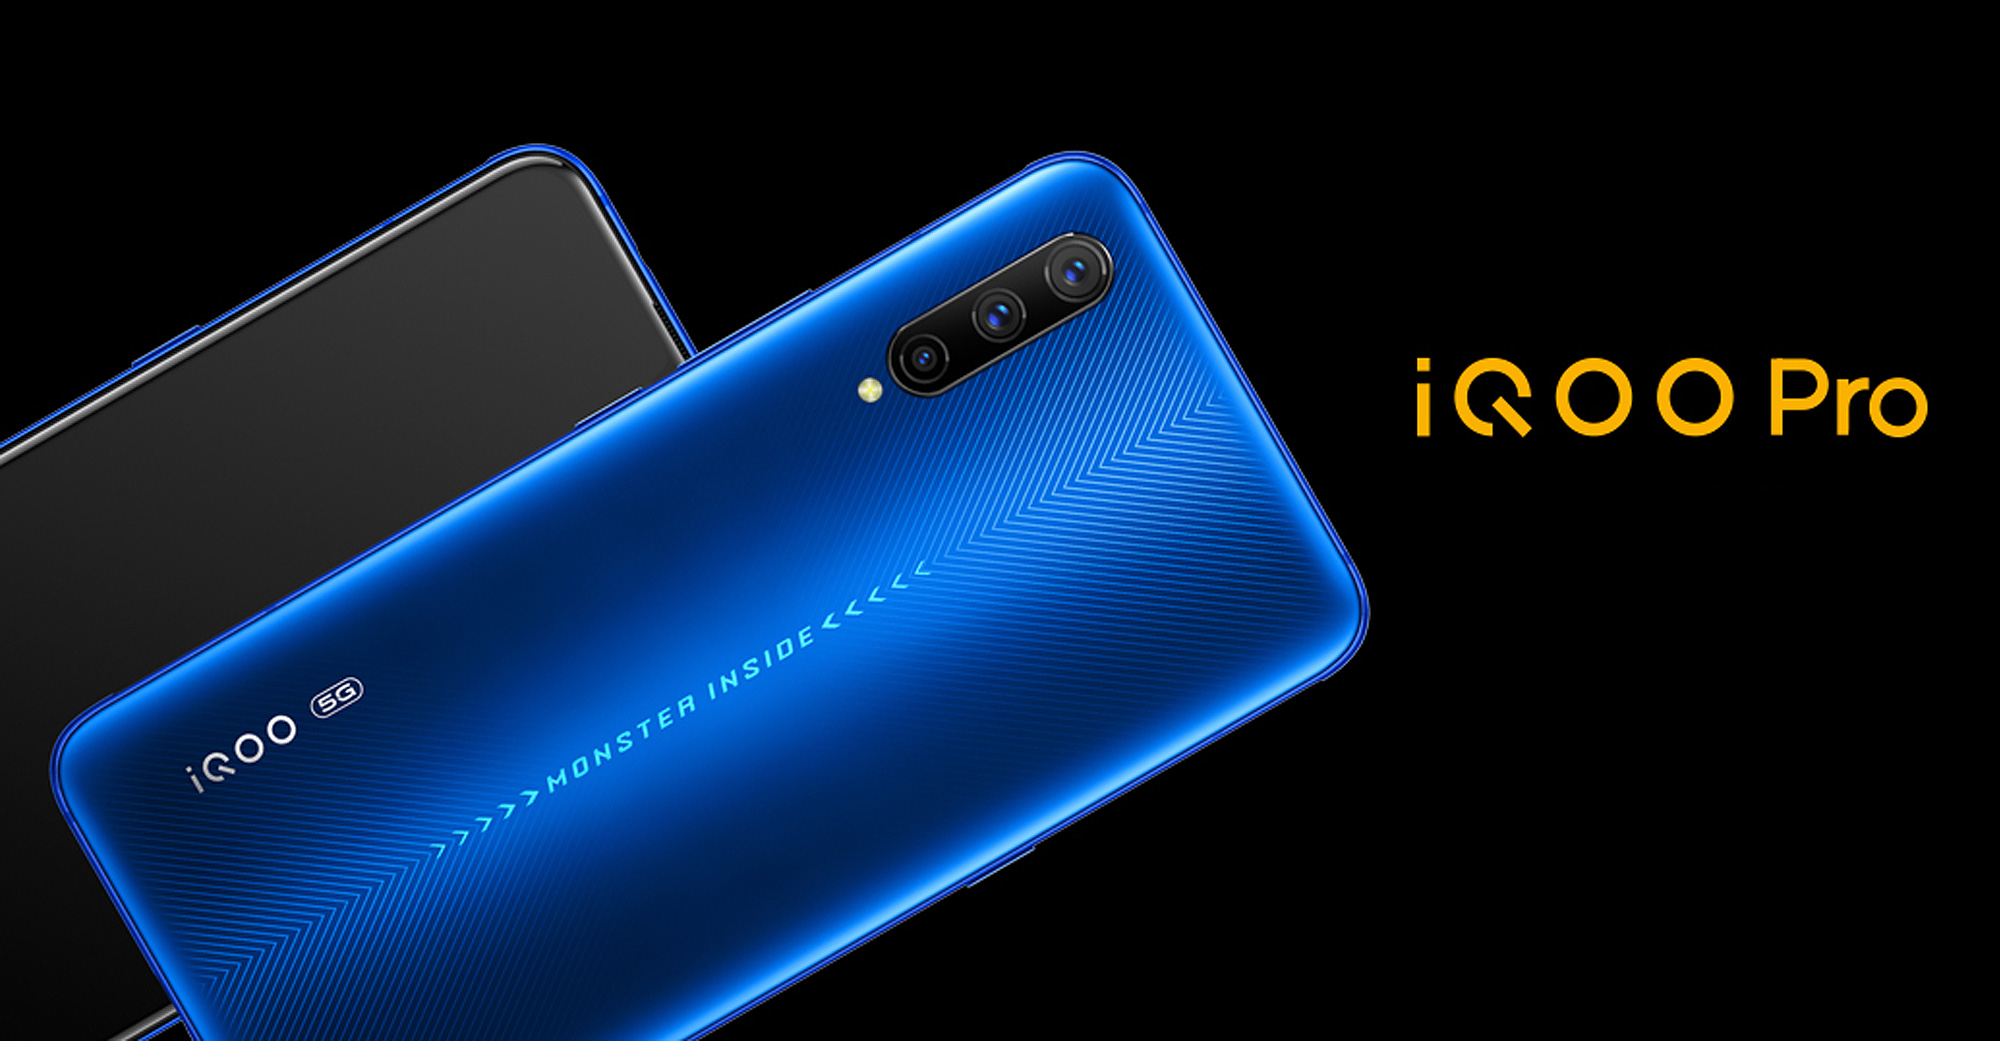 Vivo Resmi Luncurkan Gadget Terbarunya Dengan Snapdragon 855+, iQoo Pro